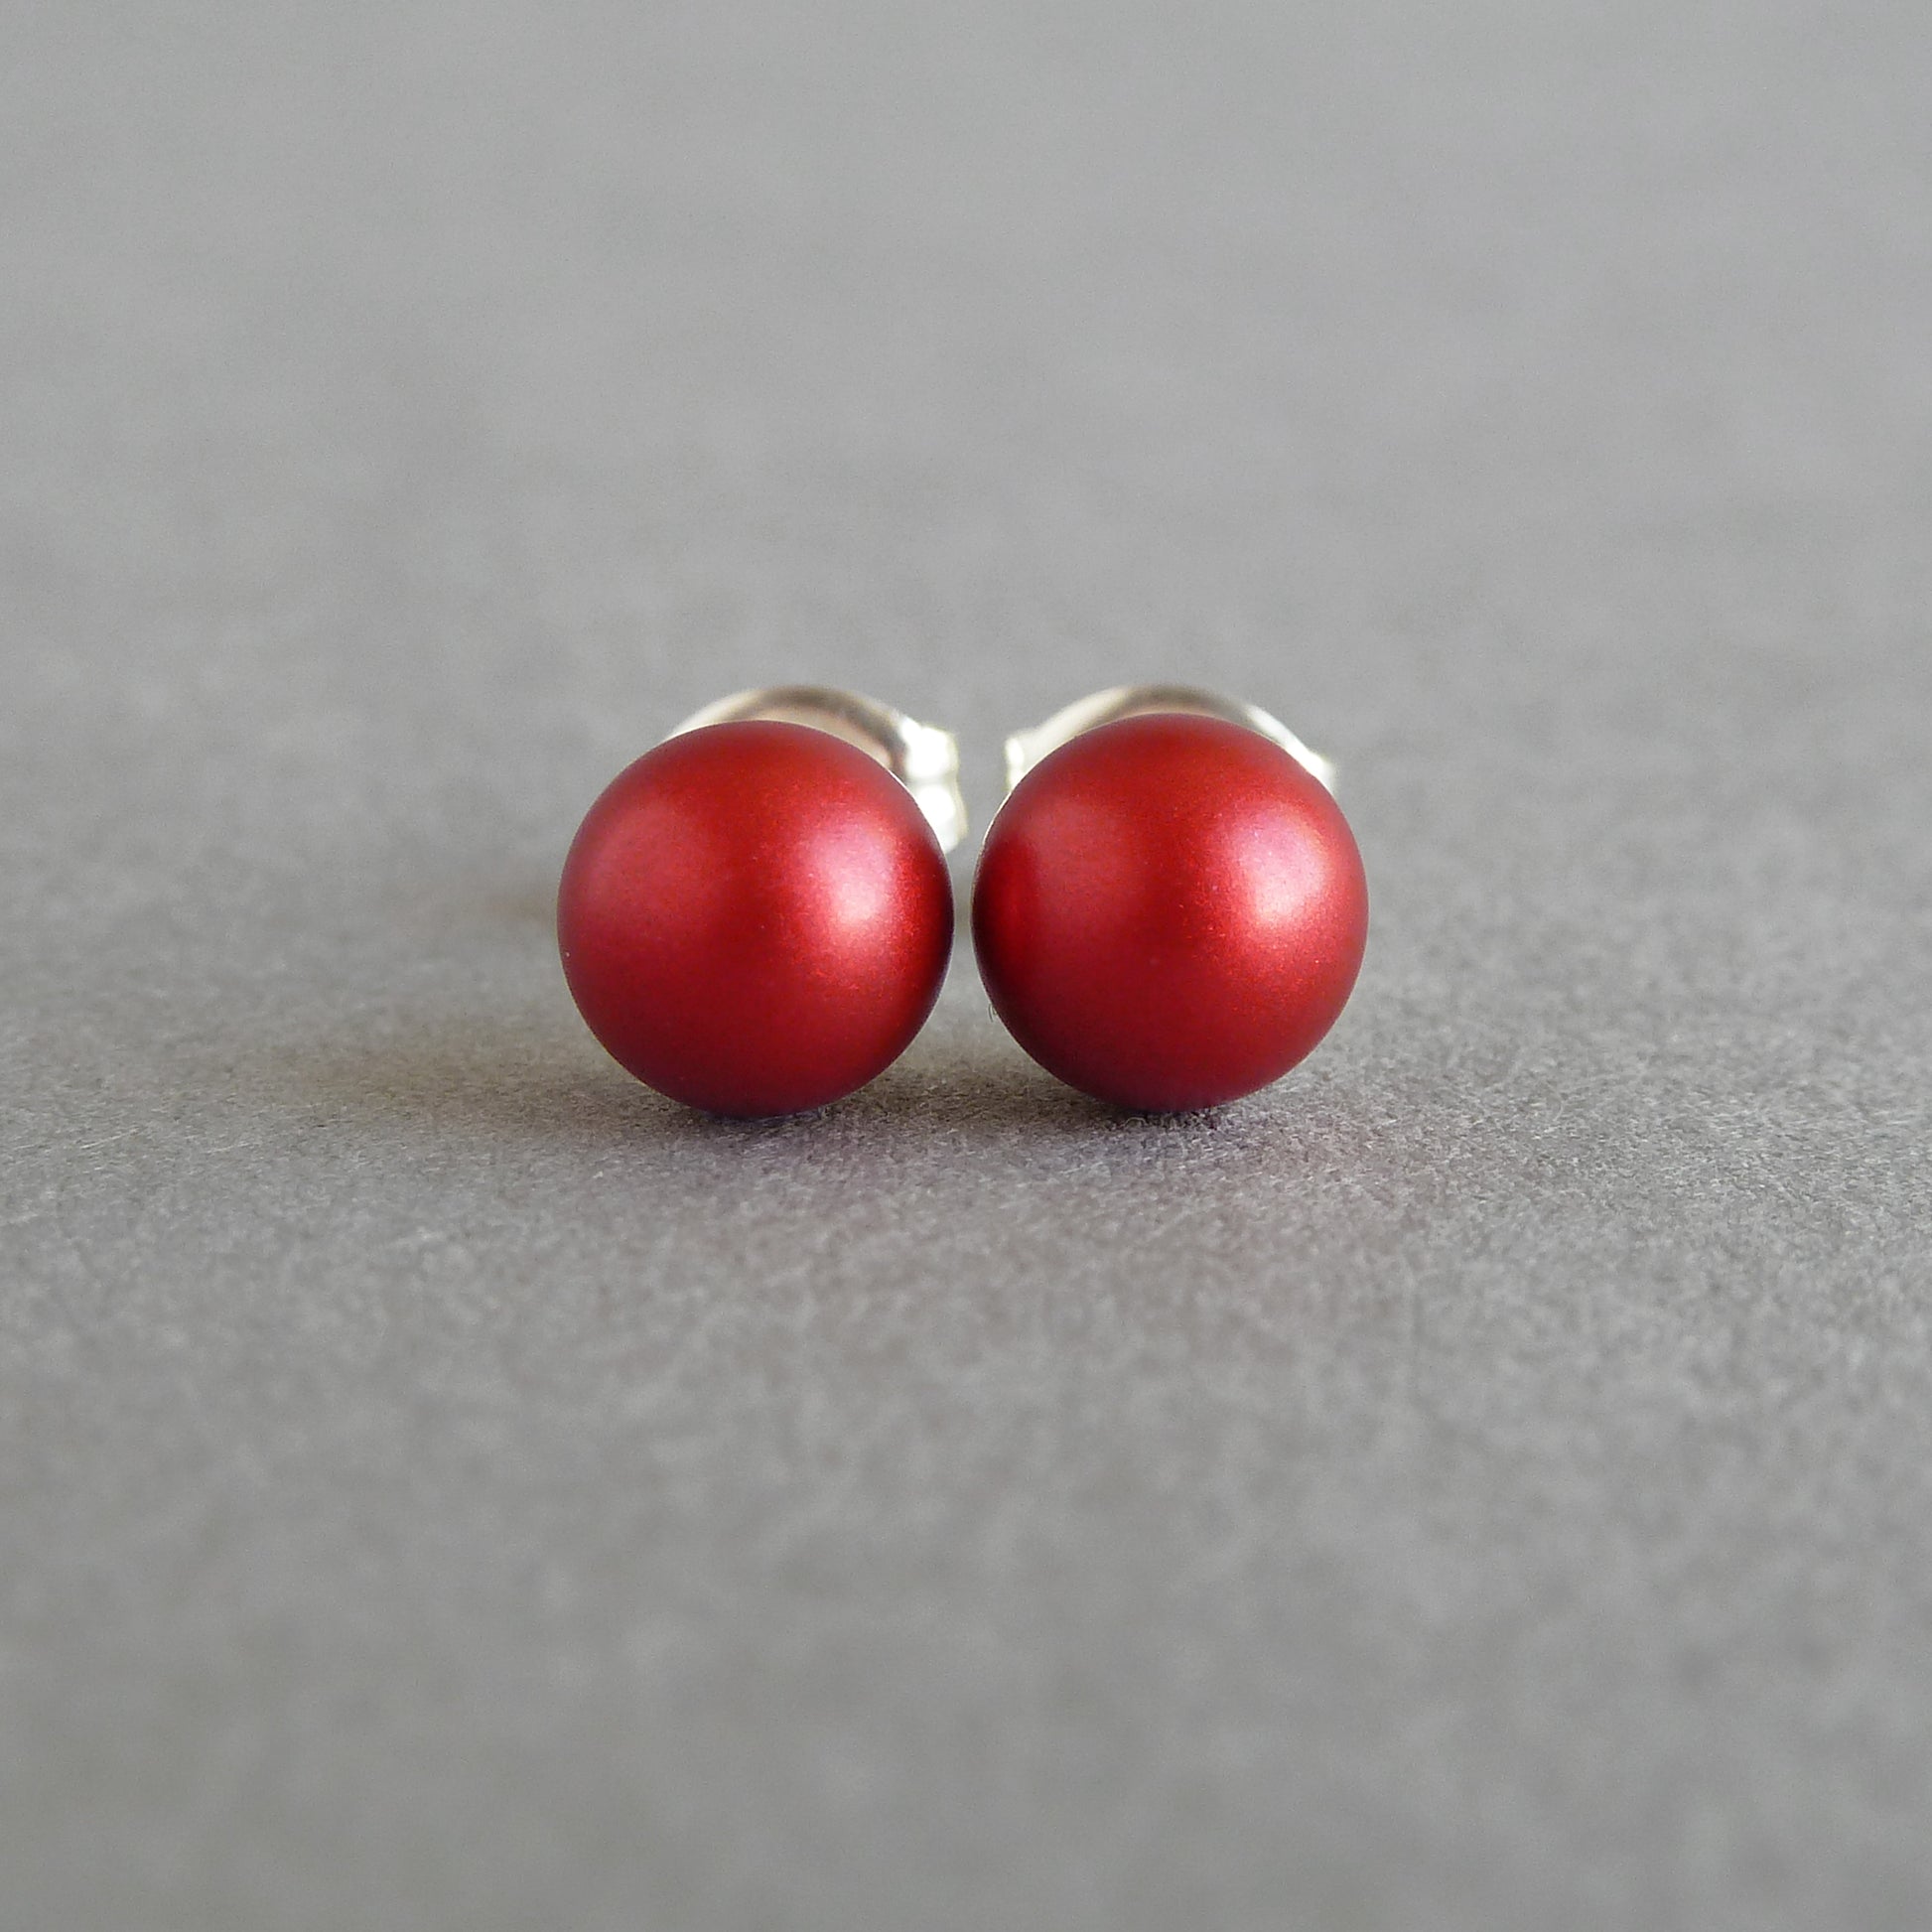 6mm red stud earrings